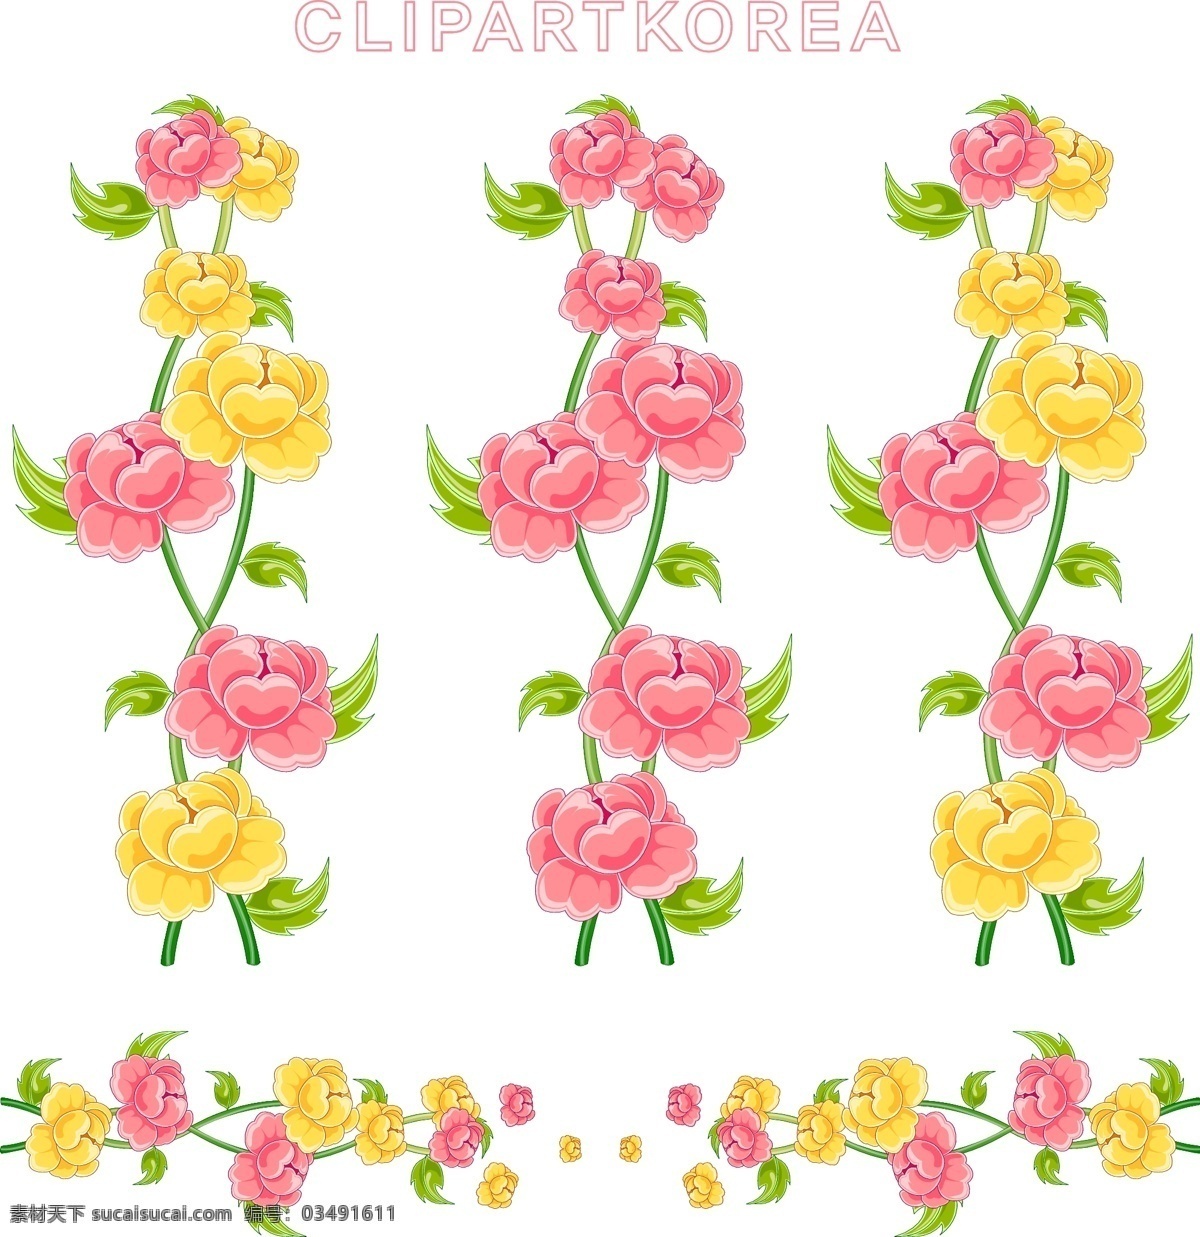 韩国 矢量 花边 ai格式 边框 花朵 花卉 花纹 玫瑰花 梦幻 模板 植物 矢量素材 叶子 素材元素 设计稿 源文件 矢量图